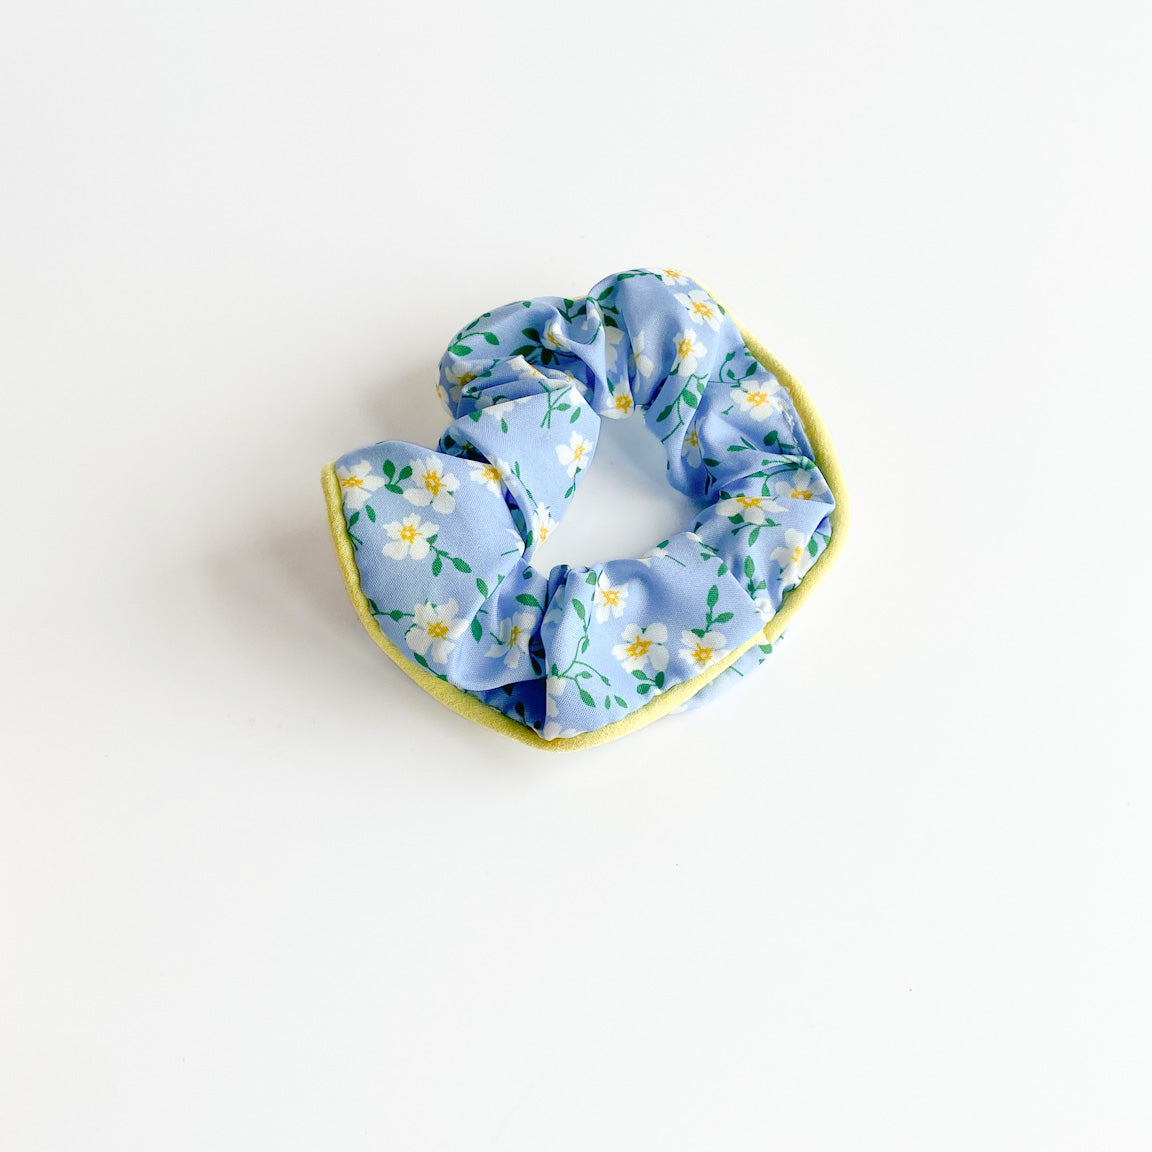 Mini Floral Scrunchie